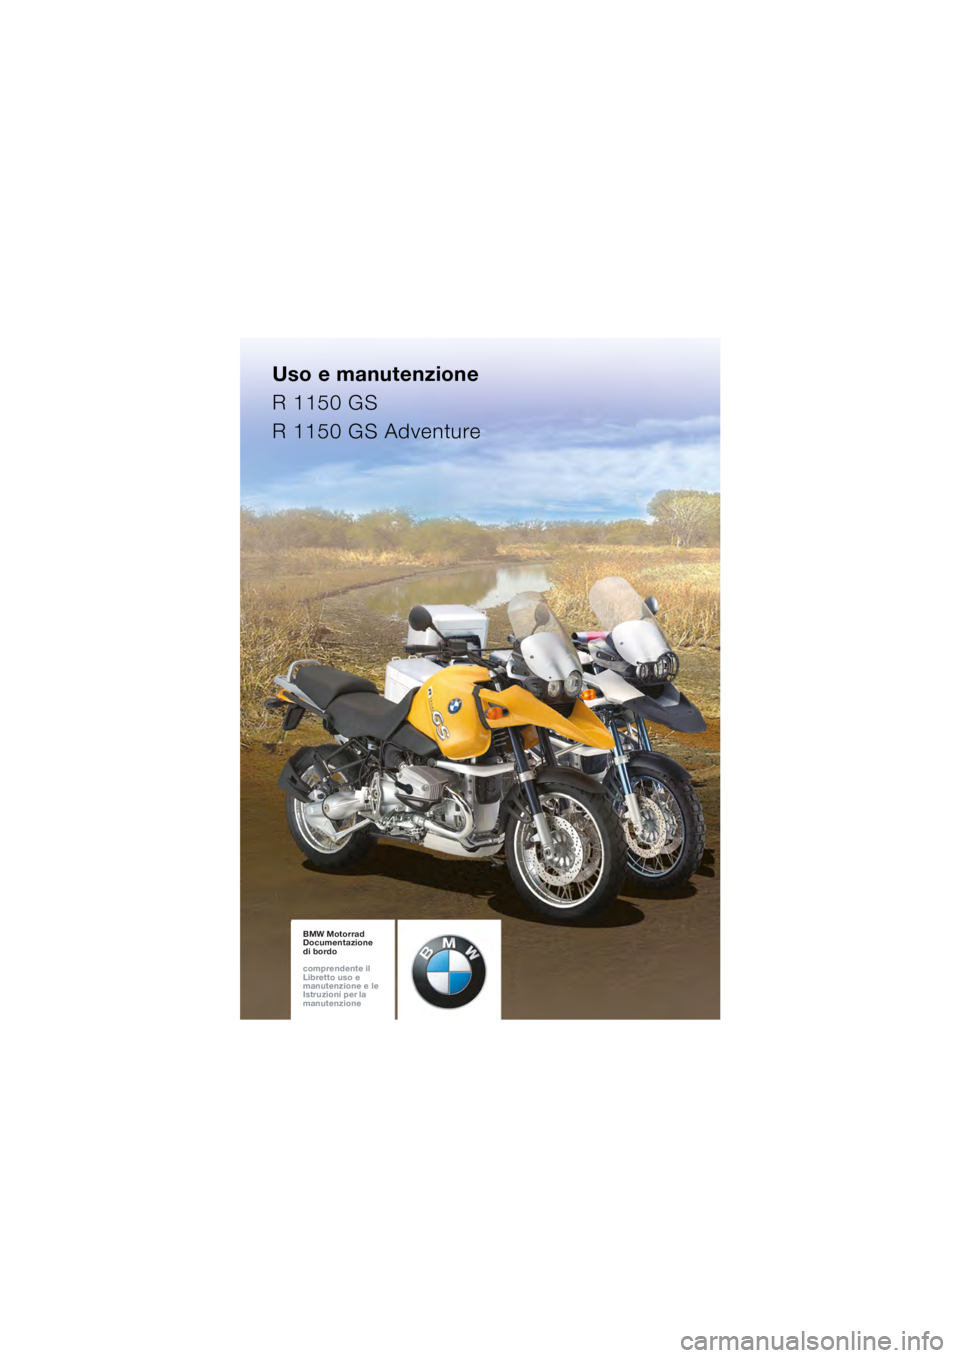 BMW MOTORRAD R 1150 GS Adventure 2002  Libretto di uso e manutenzione (in Italian) Uso e manutenzione
R 1150 GS
R 1150 GS Adventure
BMW Motorrad
Documentazione  
di bordo
comprendente il  
Libretto uso e  
manutenzione e le  
Istruzioni per la  
manutenzioneBMW Motorrad
Documentazio